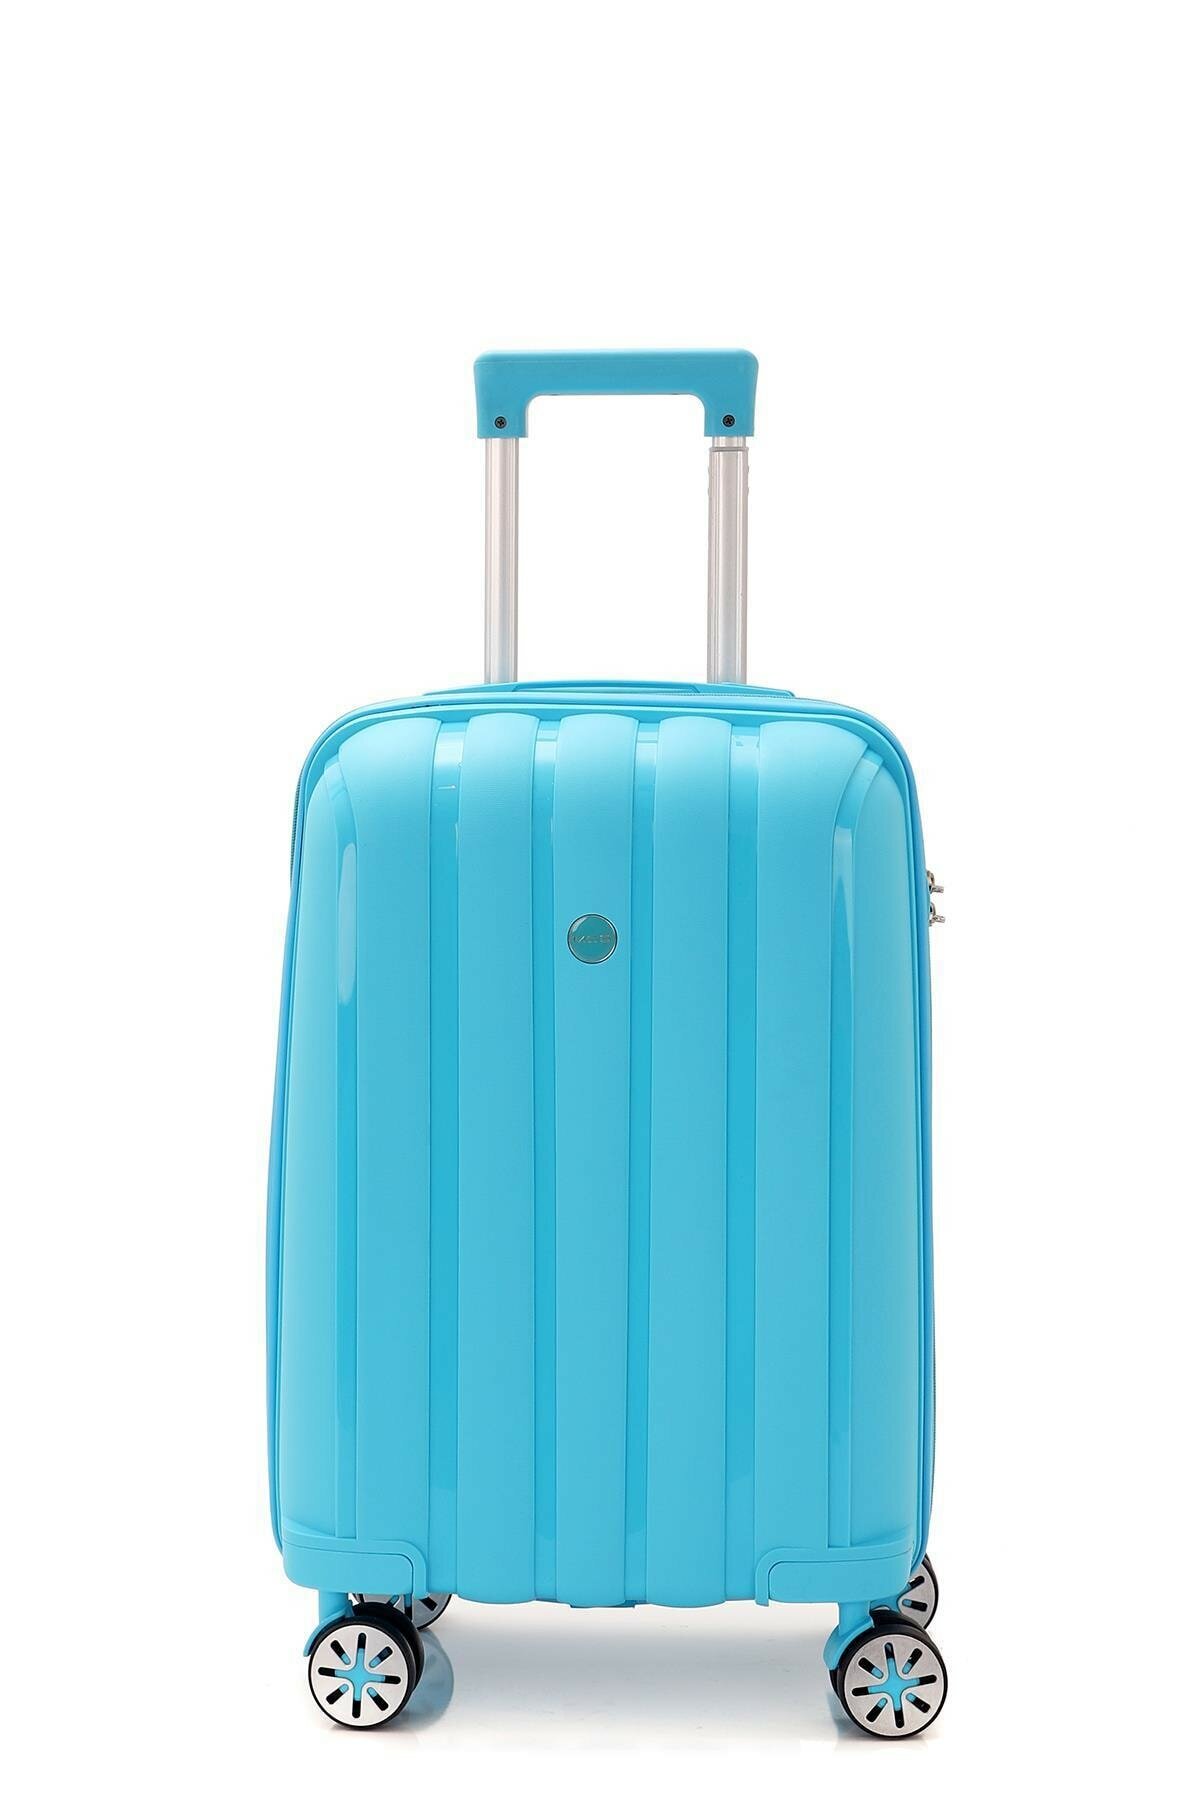 Маленький чемодан для ручьной клади из полипропилена MCS V305 S L.BLUE! Для 8-10 кг! - 1